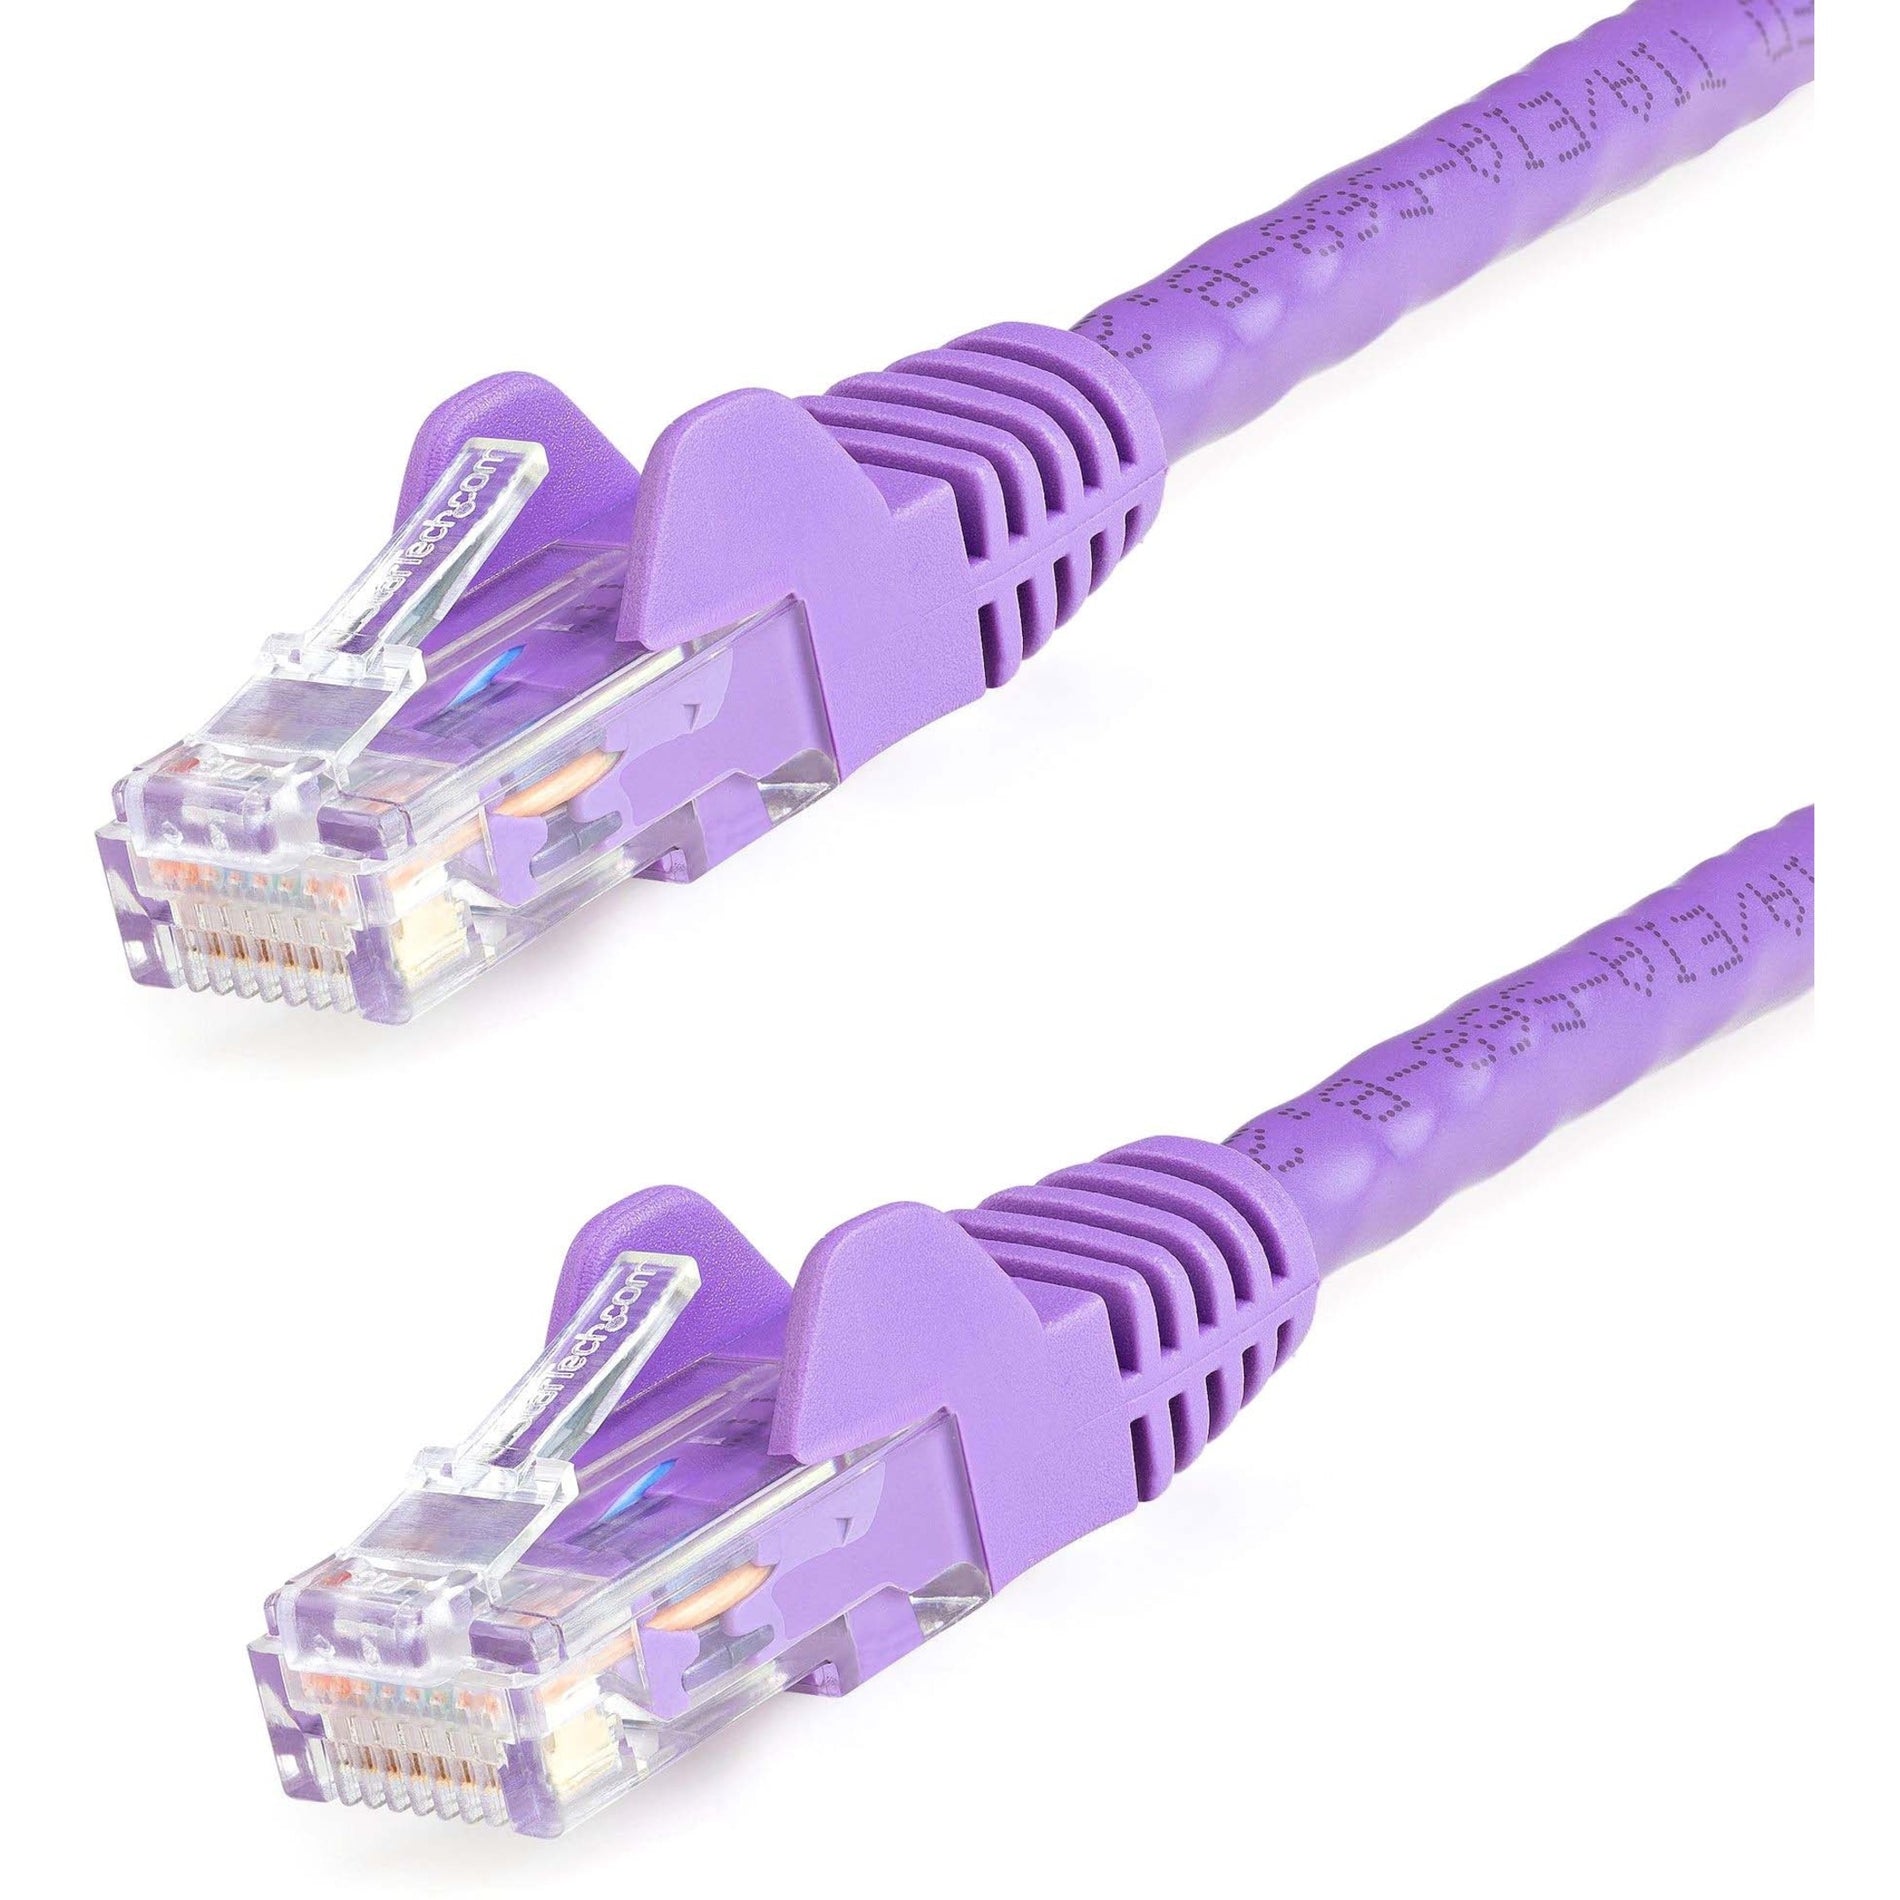 StarTech.com N6PATCH5PL Cat6 Patch Cable, 5ft Purple Ethernet Cable, Snagless RJ45 Connectors